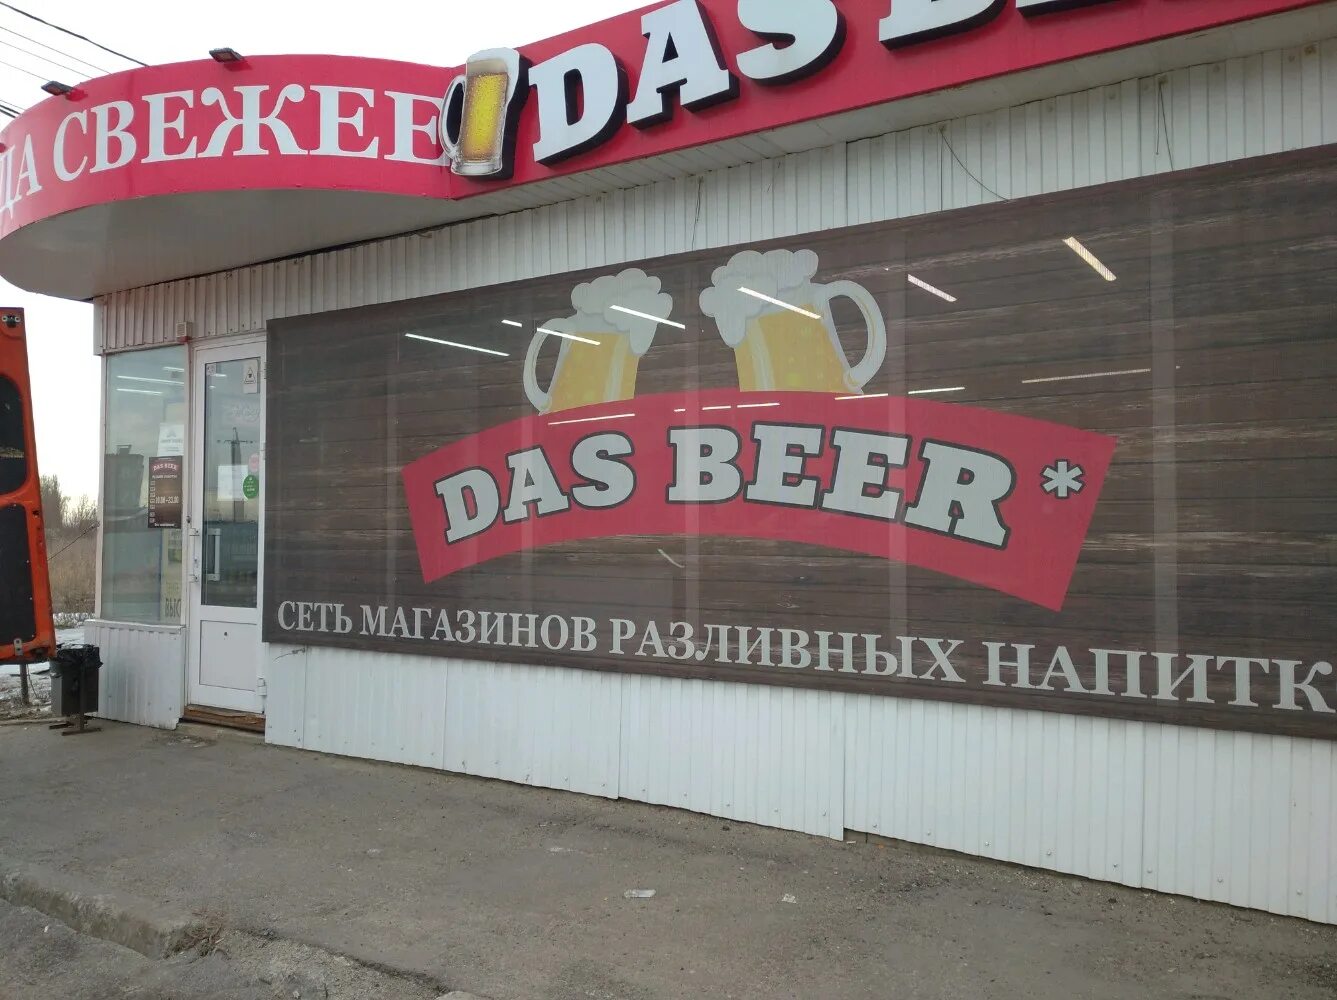 Das beer. Дас бир Воронеж. Das Beer в Воронеже пивоварня. Пиво Россия Воронеж. Пиво дас бир.